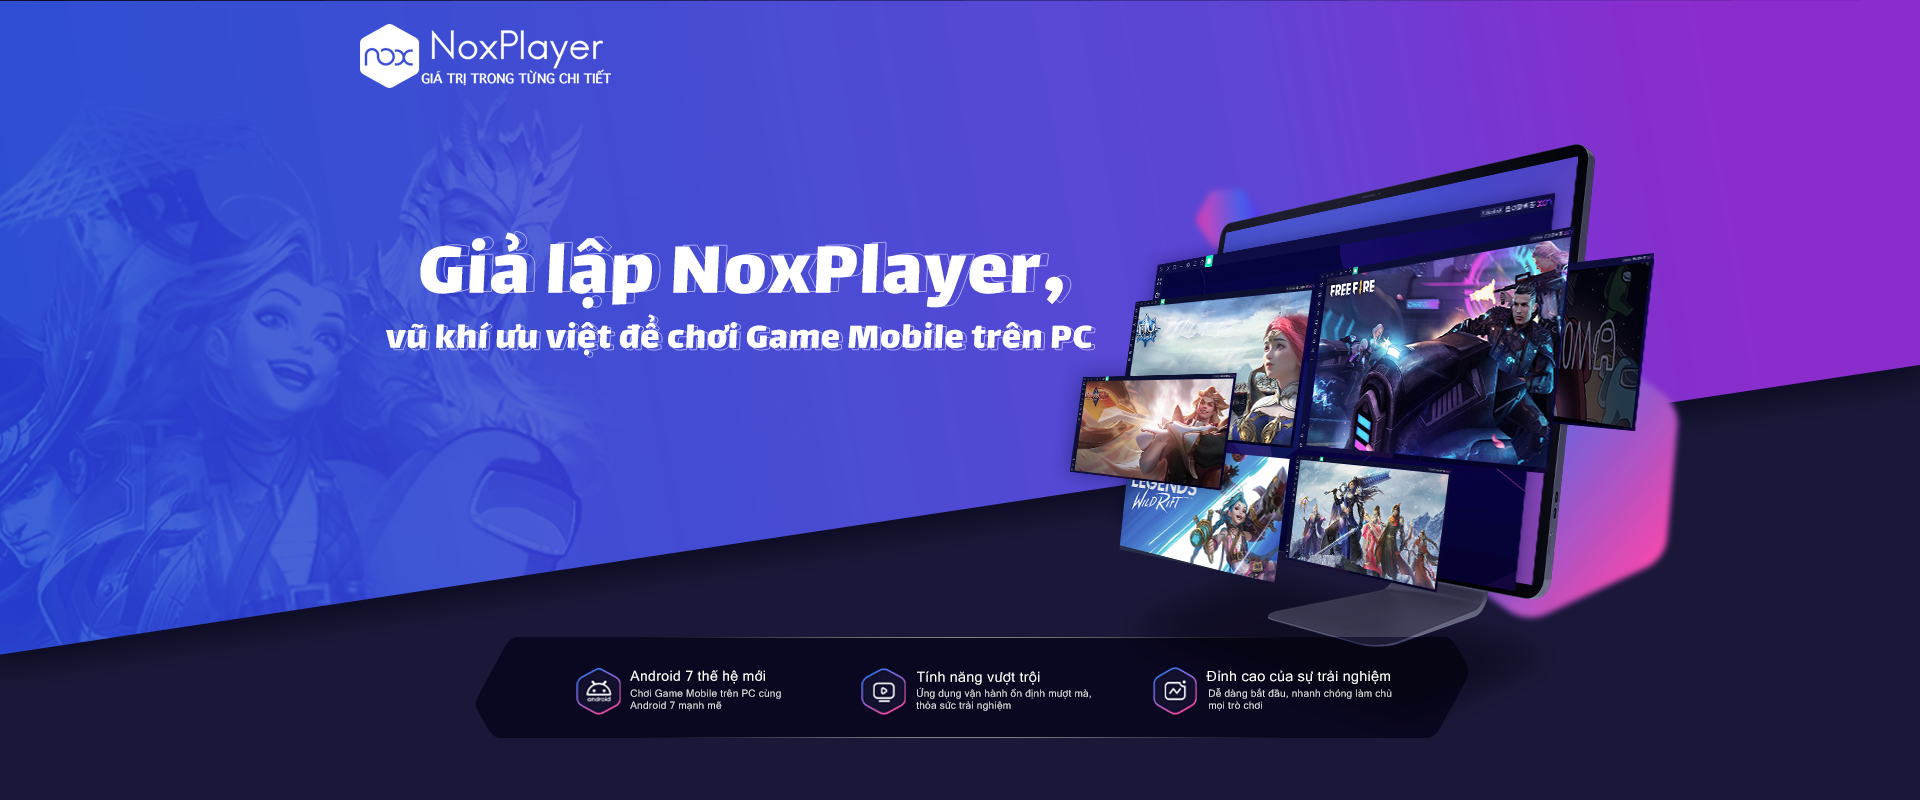 Chơi Game & Ứng dụng Android trên máy tính/PC cùng giả lập NoxPlayer